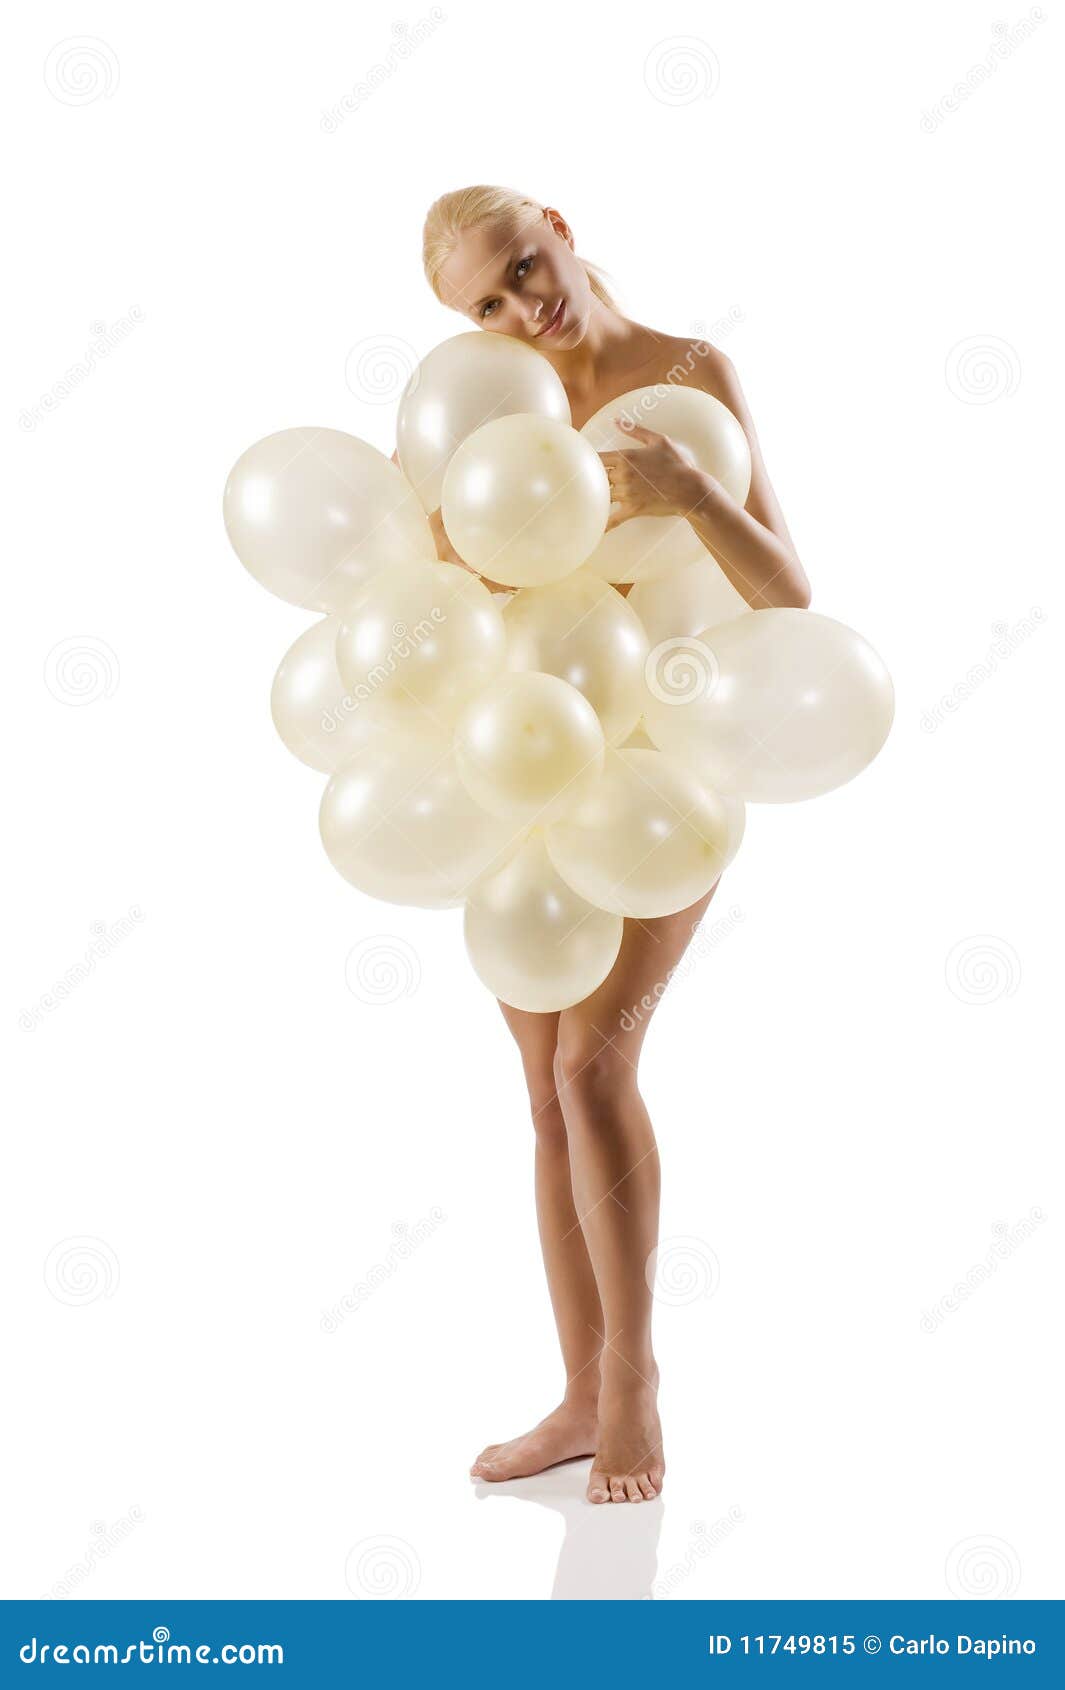 Balloon - nude photos